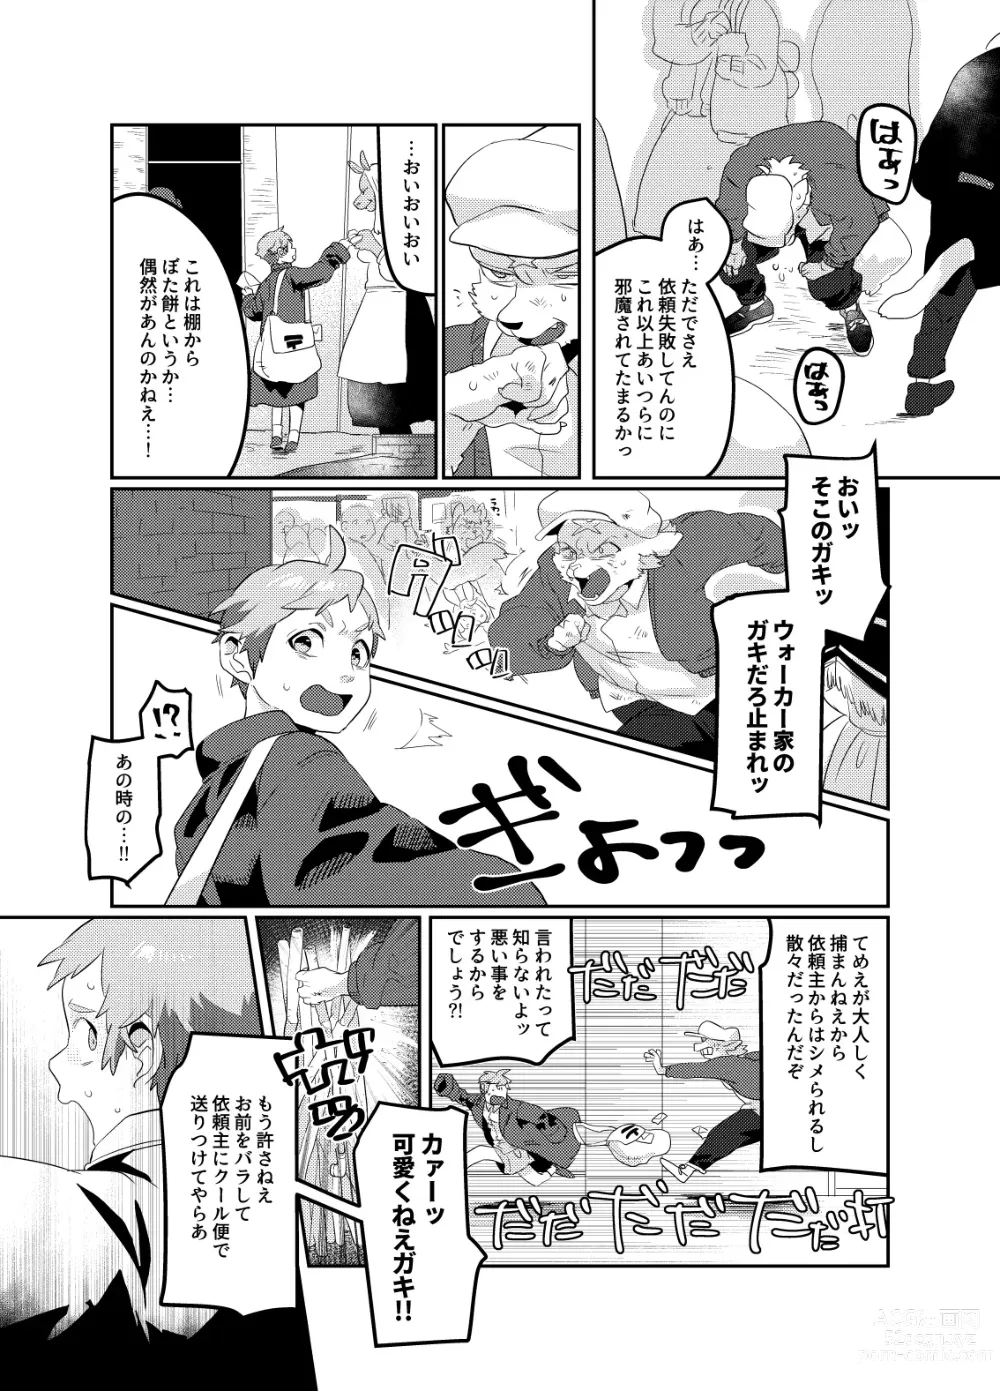 Page 32 of doujinshi Meido inHEAVEN